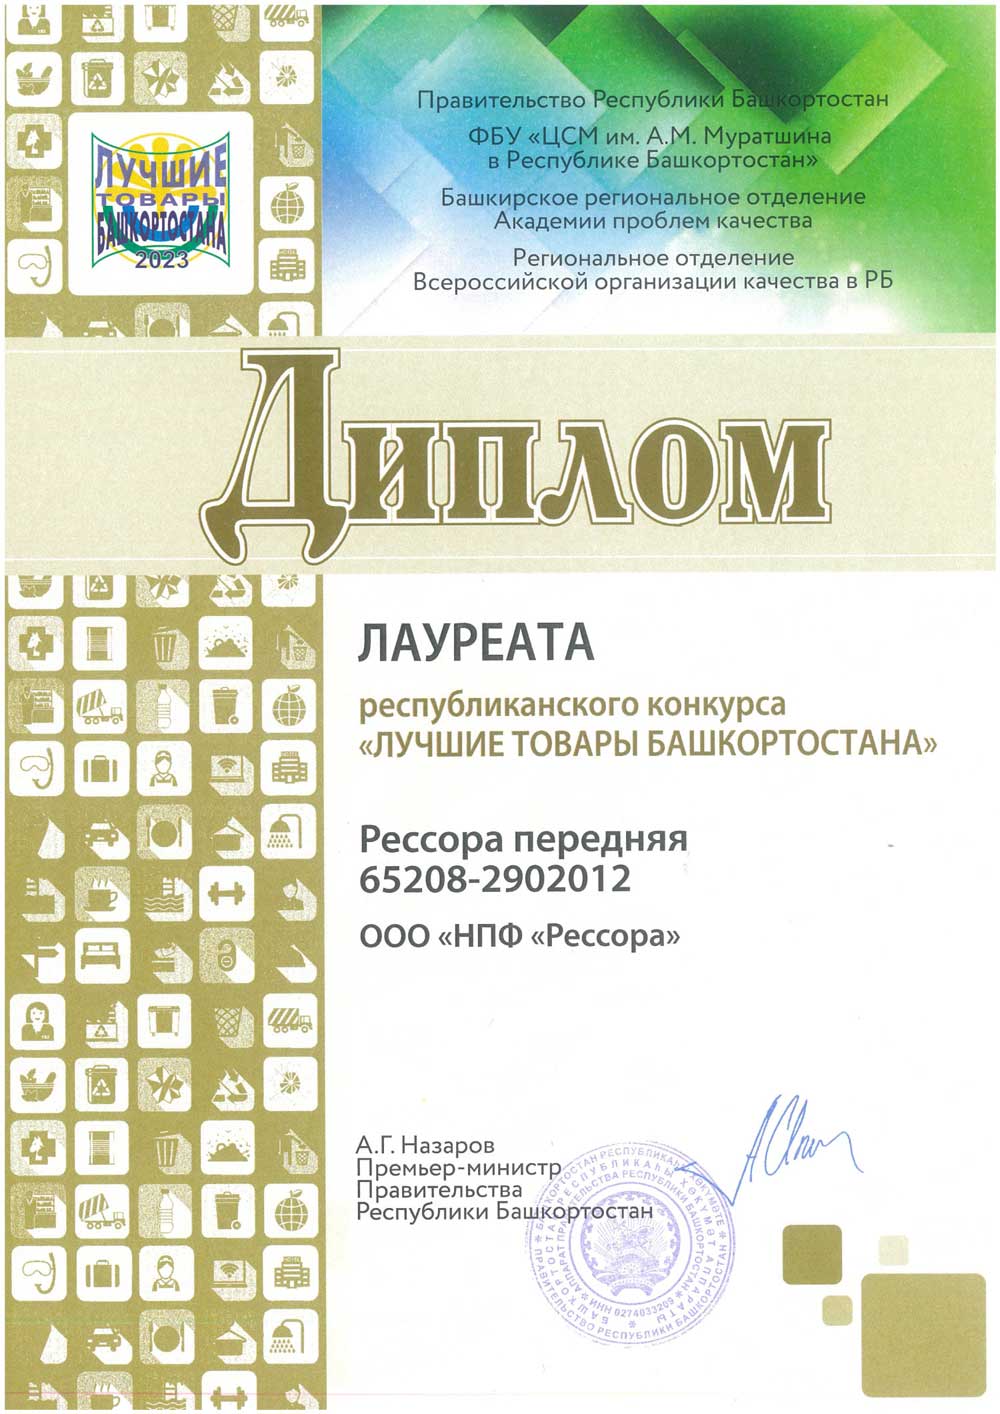 Диплом Лучшие товары Башкортостана - рессора передняя 65208-2902012